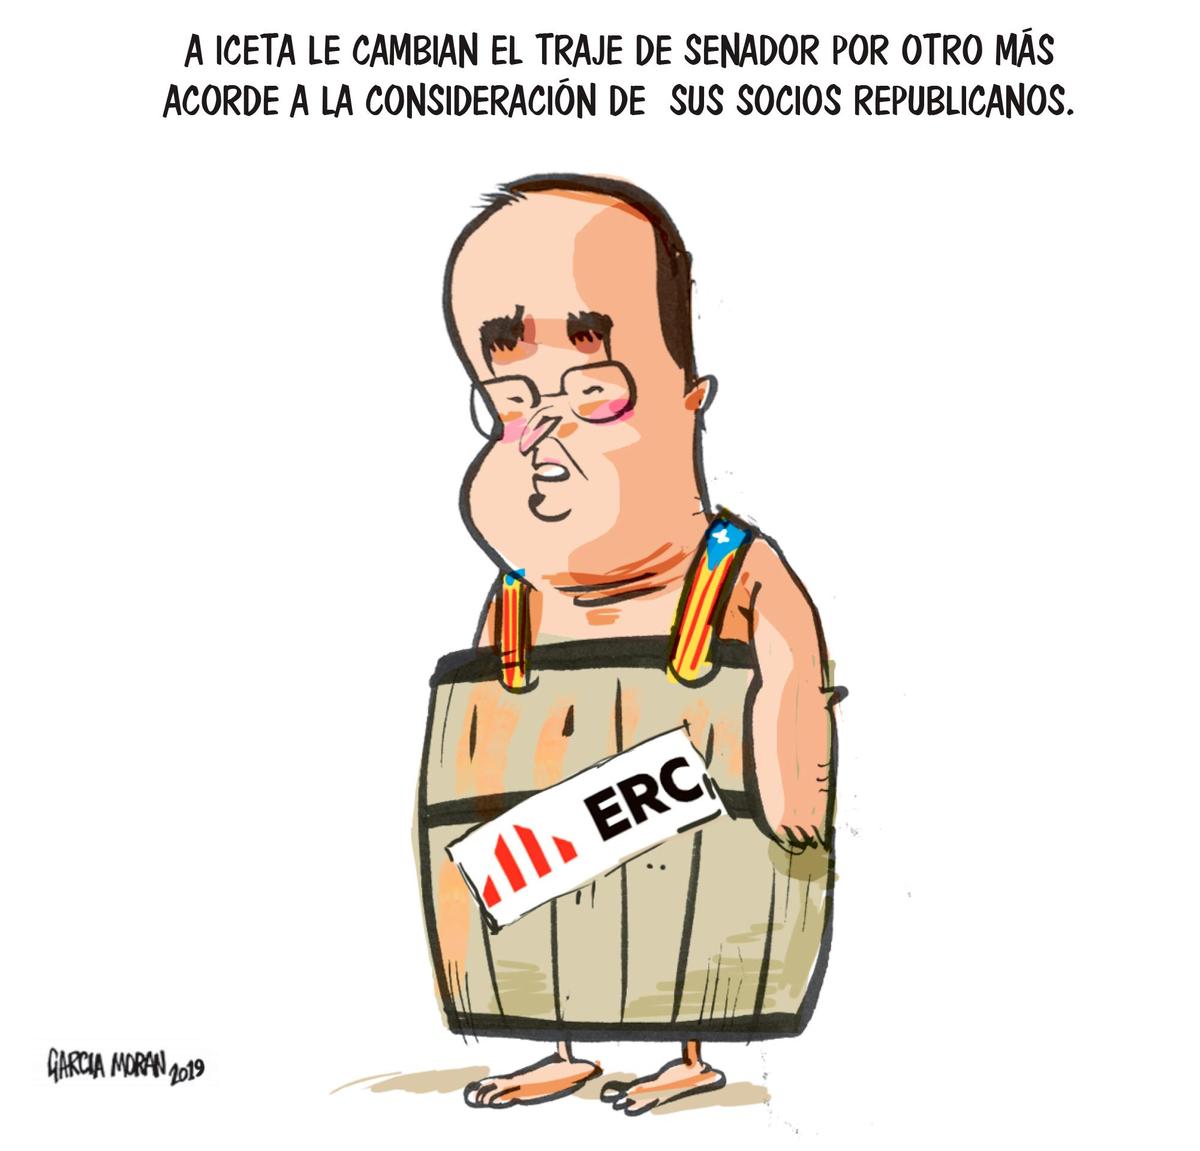 El humor de García Morán 18 de mayo de 2019